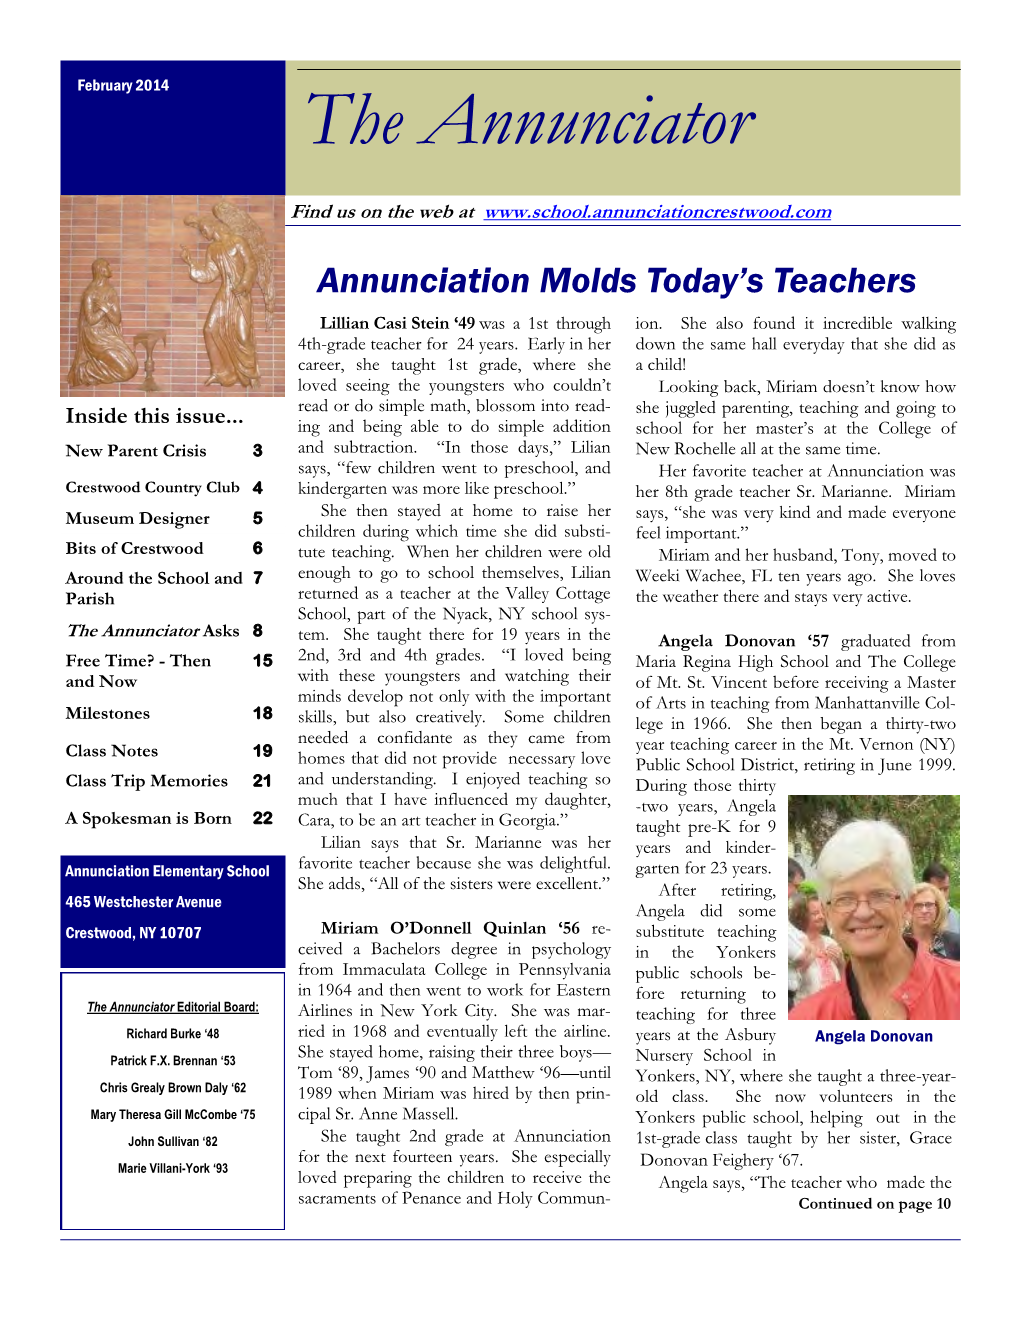 Annunciation Newsletter Feb 2